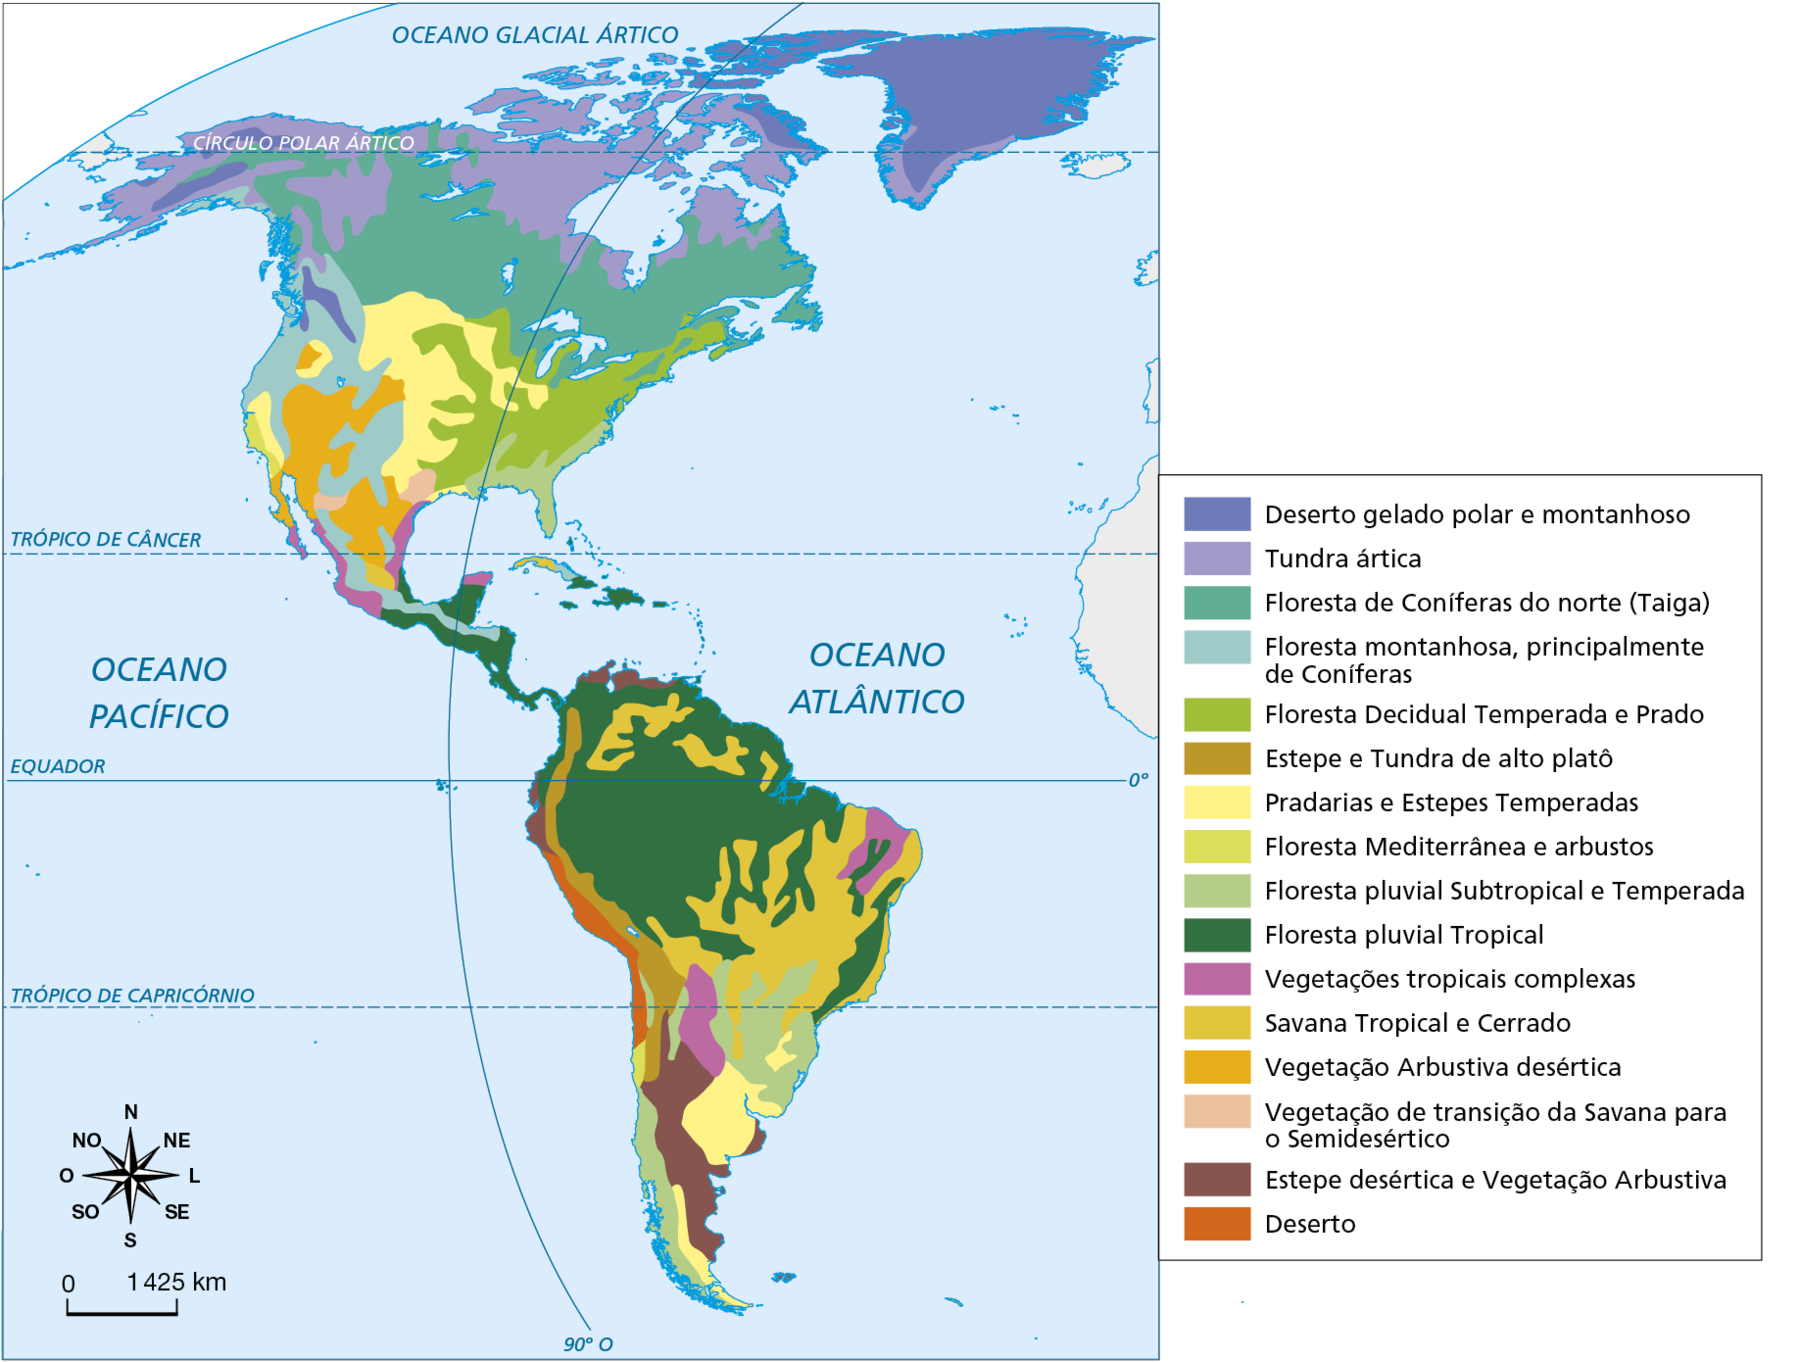 Mapa. América: vegetação. 
Mapa da América mostrando os tipos de vegetação do território.
Vegetação de deserto gelado polar e montanhoso: extremo norte do Canadá e na quase totalidade da Groenlândia. 
Vegetação de Tundra ártica: região norte do Canadá e extremo sul da Groenlândia. 
Vegetação de Floresta de Coníferas do norte (Taiga): região central e sul do Canadá; extremo norte dos Estados Unidos. 
Vegetação de floresta montanhosa, principalmente de Coníferas: região oeste dos Estados Unidos, Canadá, e México. 
Vegetação de Floresta Decidual Temperada e Prado: região Leste dos Estados Unidos. 
Vegetação de Estepe e Tundra de alto platô: faixa leste da América do Sul. 
Vegetação de Pradarias e Estepes Temperadas: região central dos Estados Unidos; sul da América do Sul. 
Vegetação de Floresta Mediterrânea e arbustos: pequena área na região oeste dos Estados Unidos. 
Vegetação de Floresta pluvial Subtropical e Temperada: na parte sul da América do Sul, trechos a oeste e a leste; trecho sudeste dos Estados Unidos.
Vegetação de Floresta pluvial Tropical: sul do México, países da América Central, parte norte da América do Sul, costa leste  do Brasil. 
Vegetações tropicais complexas: pequena porção na região centro-oeste da América do Sul; nordeste do Brasil, região do litoral atlântico e pacífico do México. 
Vegetação de Savana Tropical e Cerrado: região central do Brasil; trechos do extremos norte da América do Sul. 
Vegetação Arbustiva desértica: região central dos Estados Unidos, norte do México. 
Vegetação de transição da Savana para o Semidesértico: trechos do sul dos Estados Unidos. 
Vegetação de Estepe desértica e Vegetação Arbustiva: pequena faixa no extremo norte da América do Sul e parte sul da América do Sul. 
Vegetação de Deserto: costa oeste da América do Sul. 
Na parte inferior, rosa dos ventos e escala de 0 a 1.425 quilômetros.